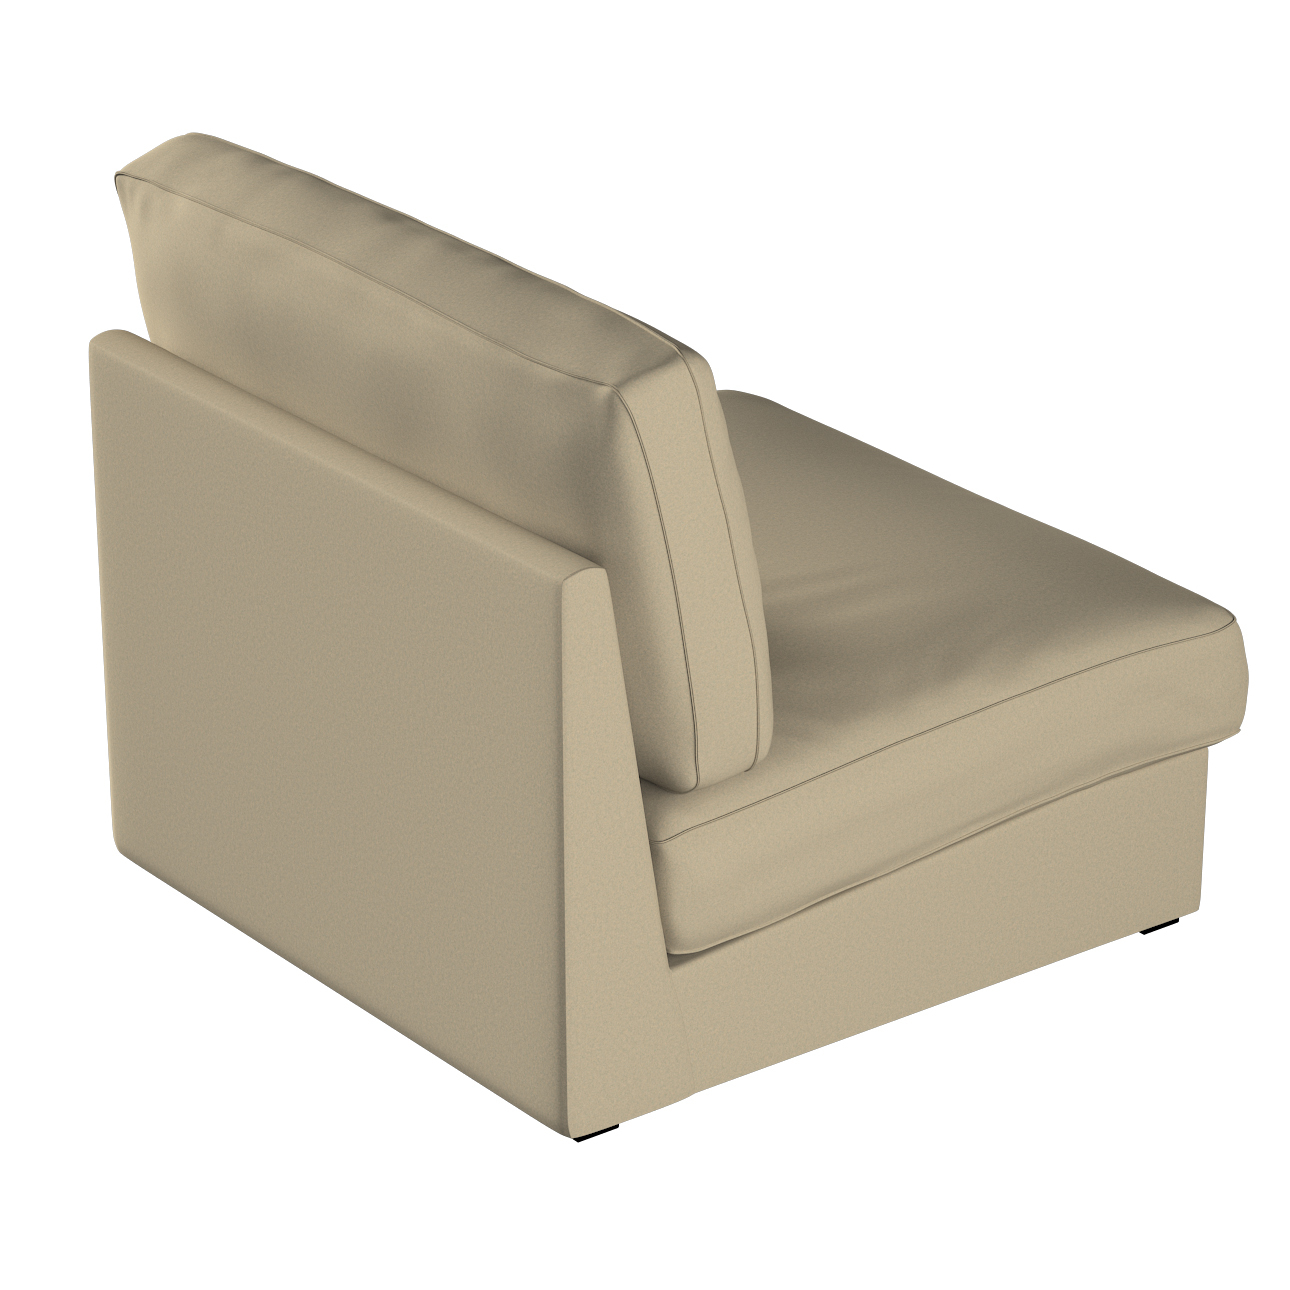 Bezug für Kivik Sessel nicht ausklappbar, dunkelbeige, Bezug für Sessel Kiv günstig online kaufen